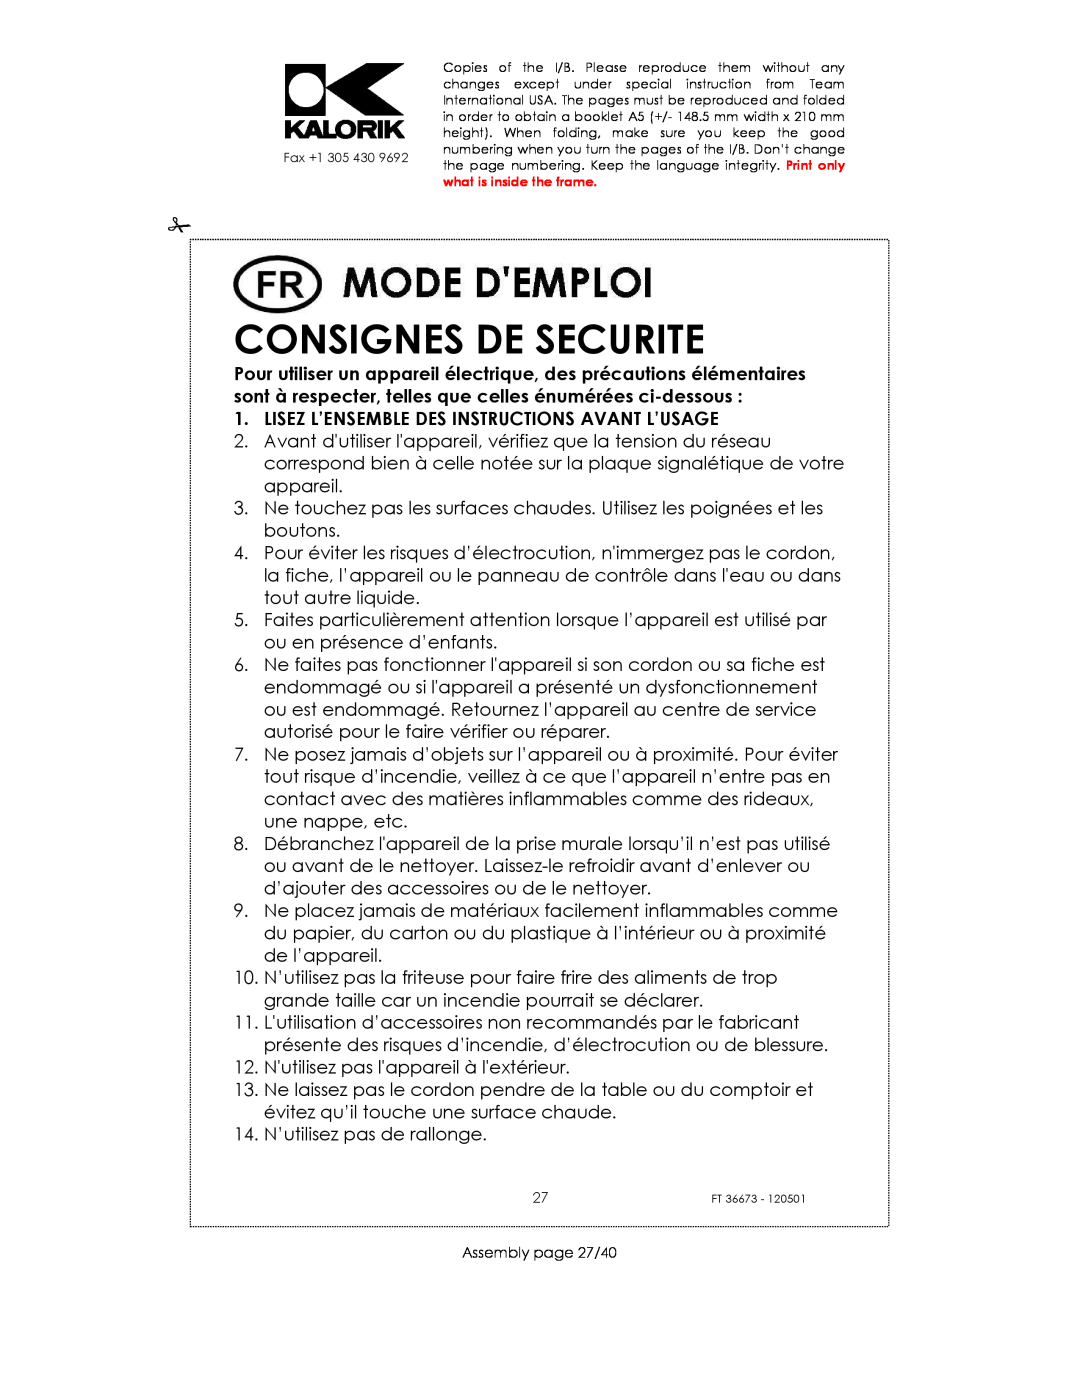 Kalorik USK FT 36673 manual Consignes De Securite, Lisez L’Ensemble Des Instructions Avant L’Usage 